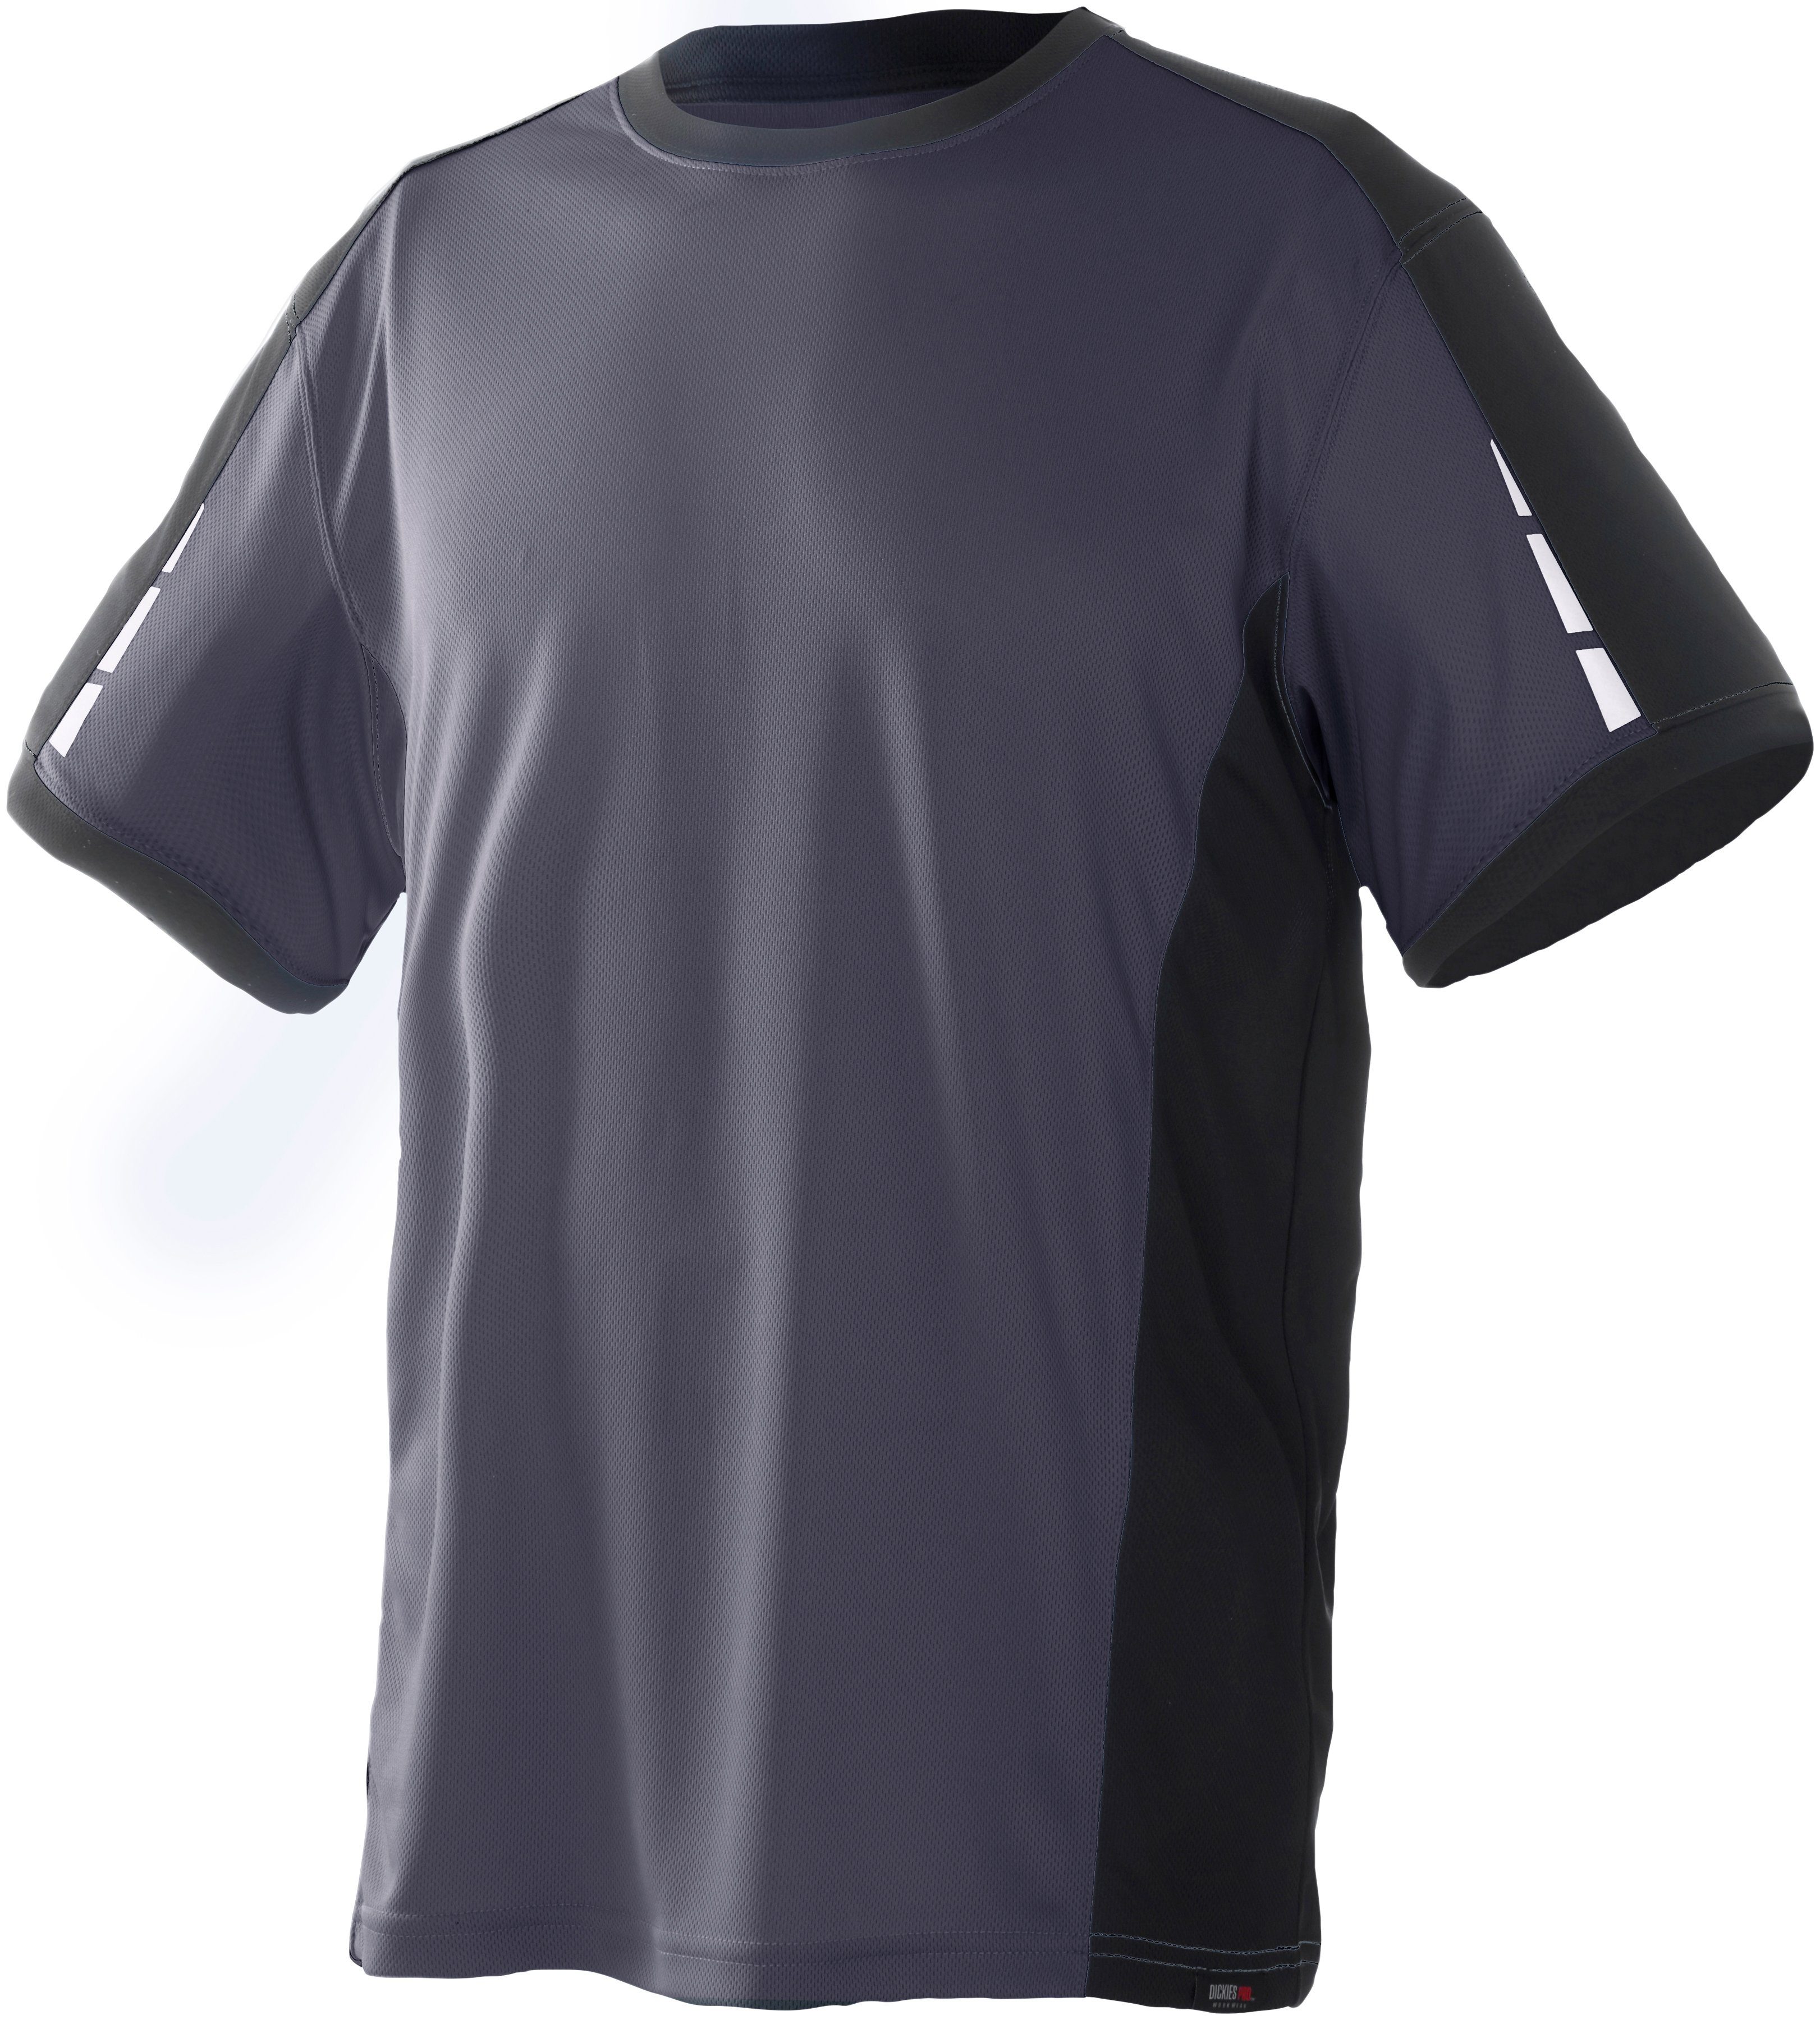 T-Shirt an den Dickies Ärmeln Details reflektierenden grau-schwarz Pro mit